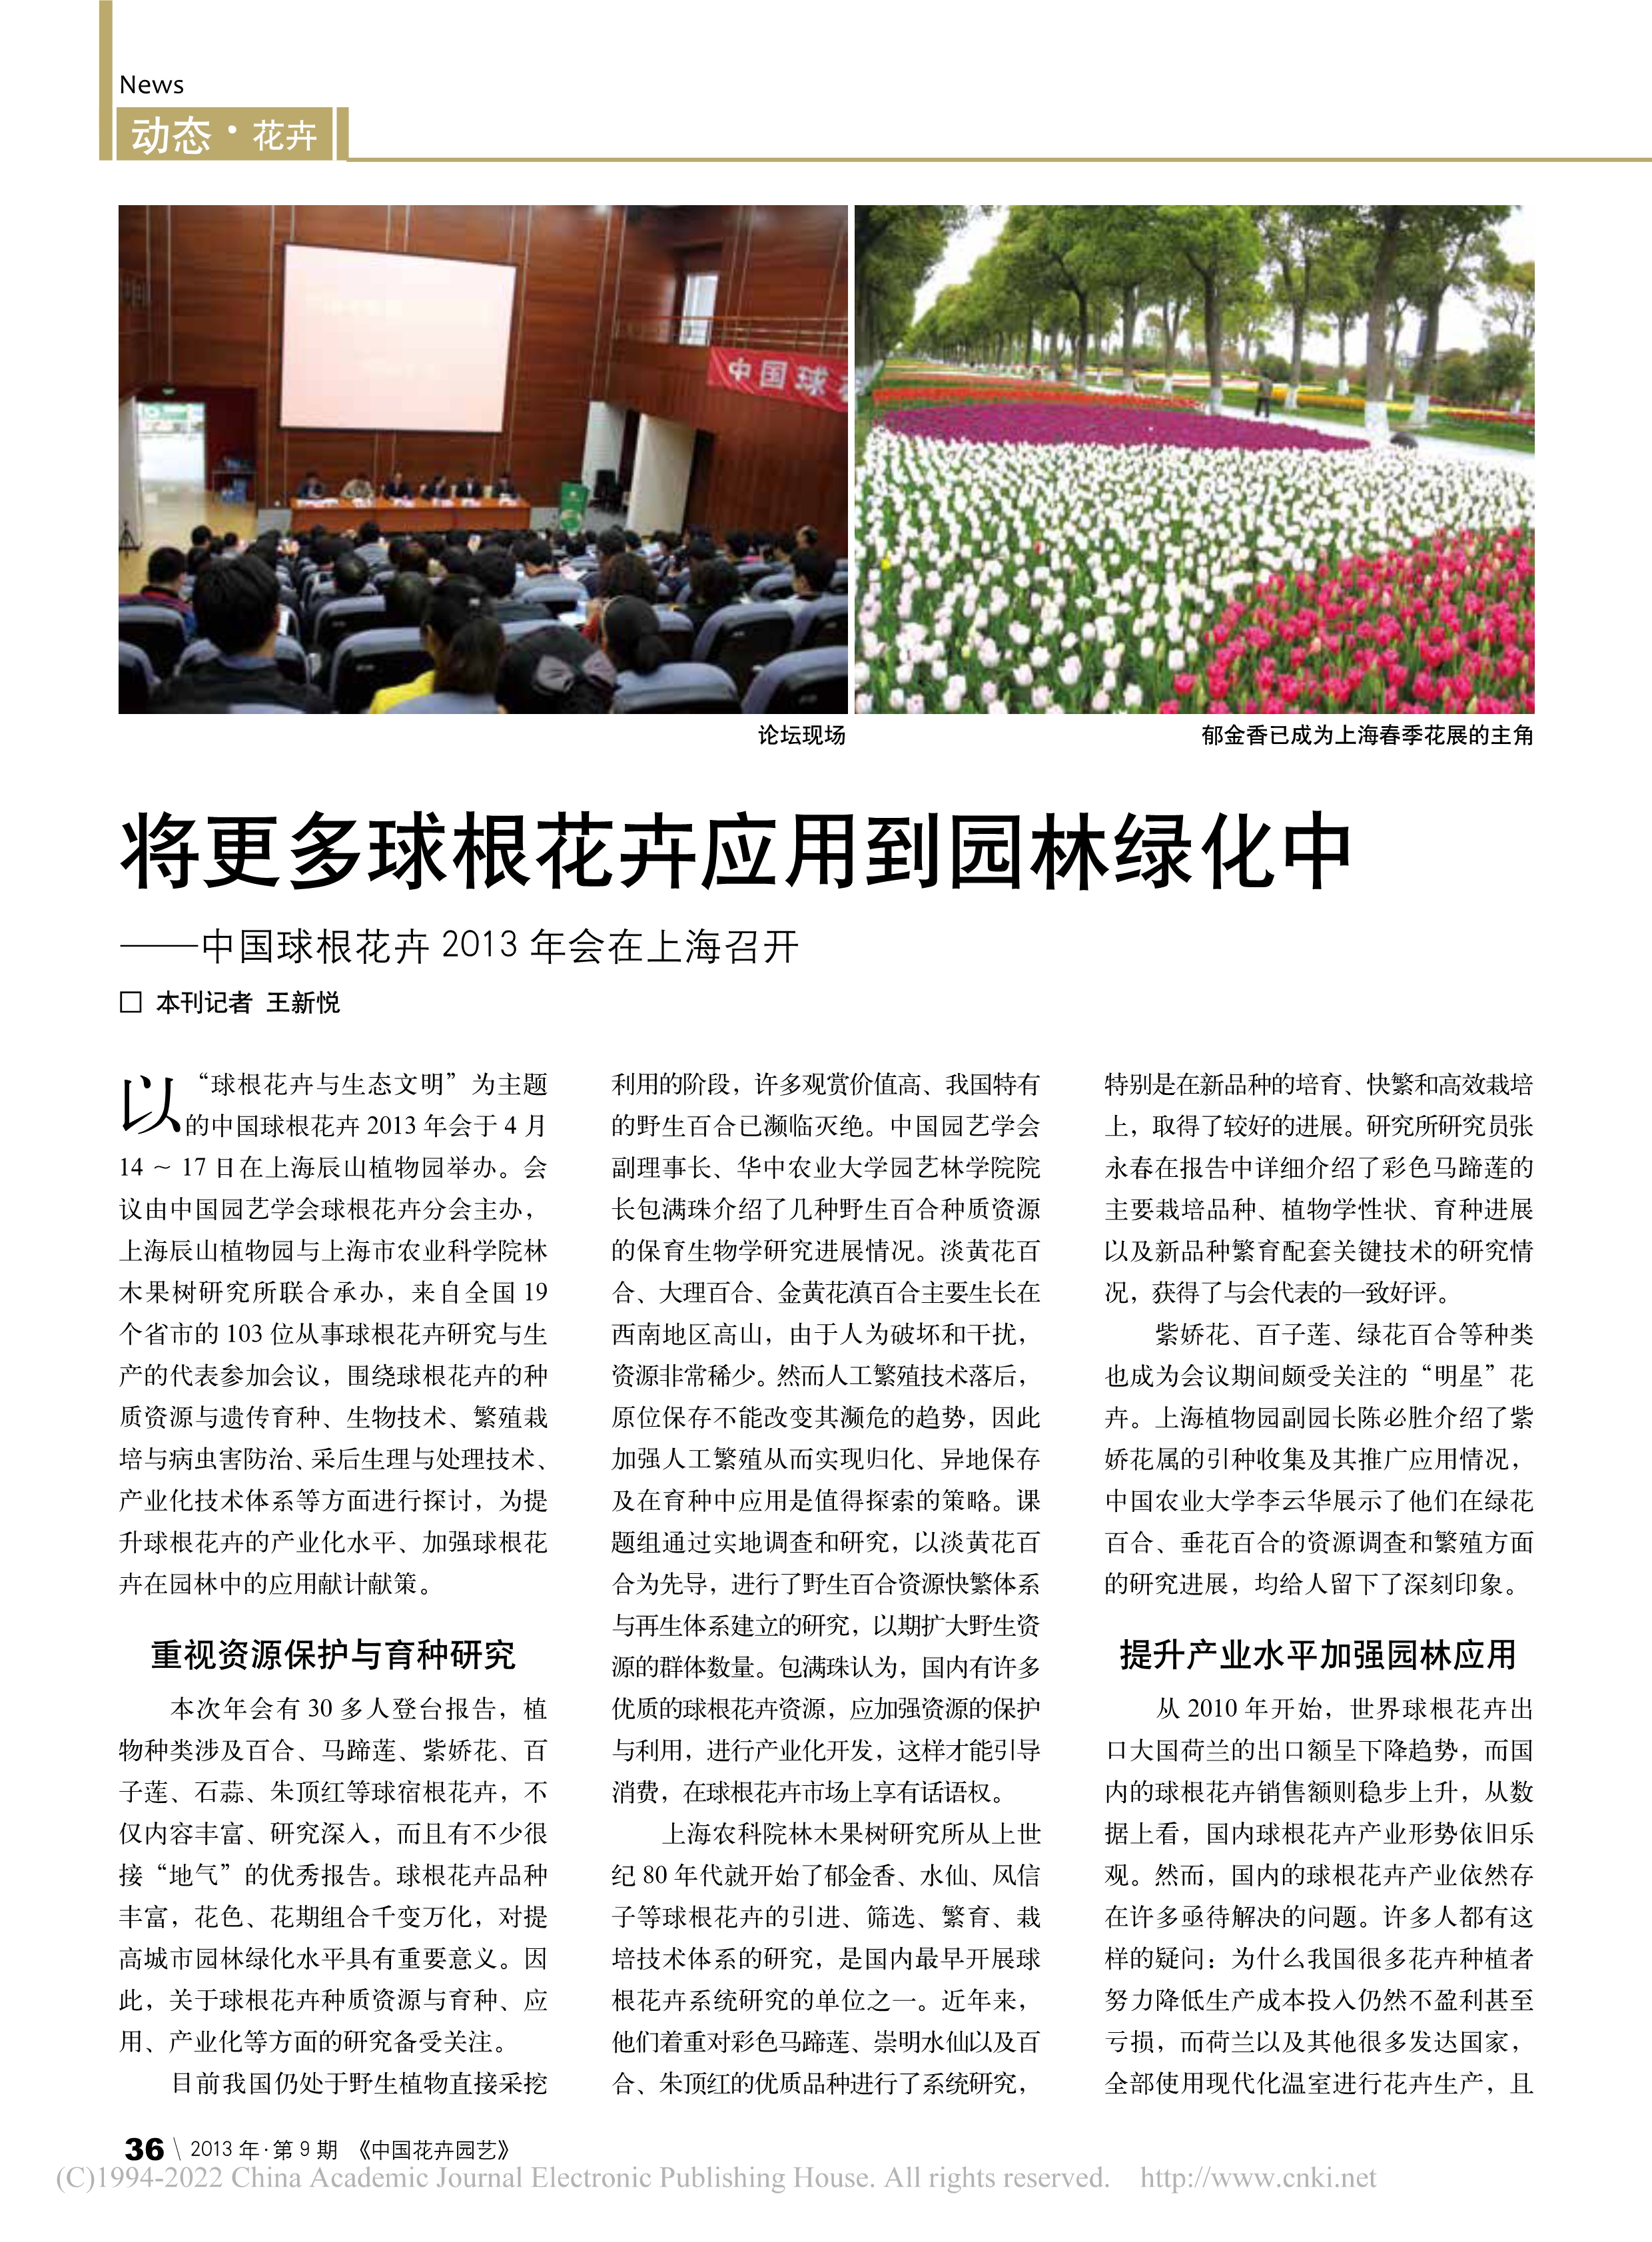 CSBP08 将更多球根花卉应用到园林绿化中——中国球根花卉2013年会在上海召开_王新悦_1